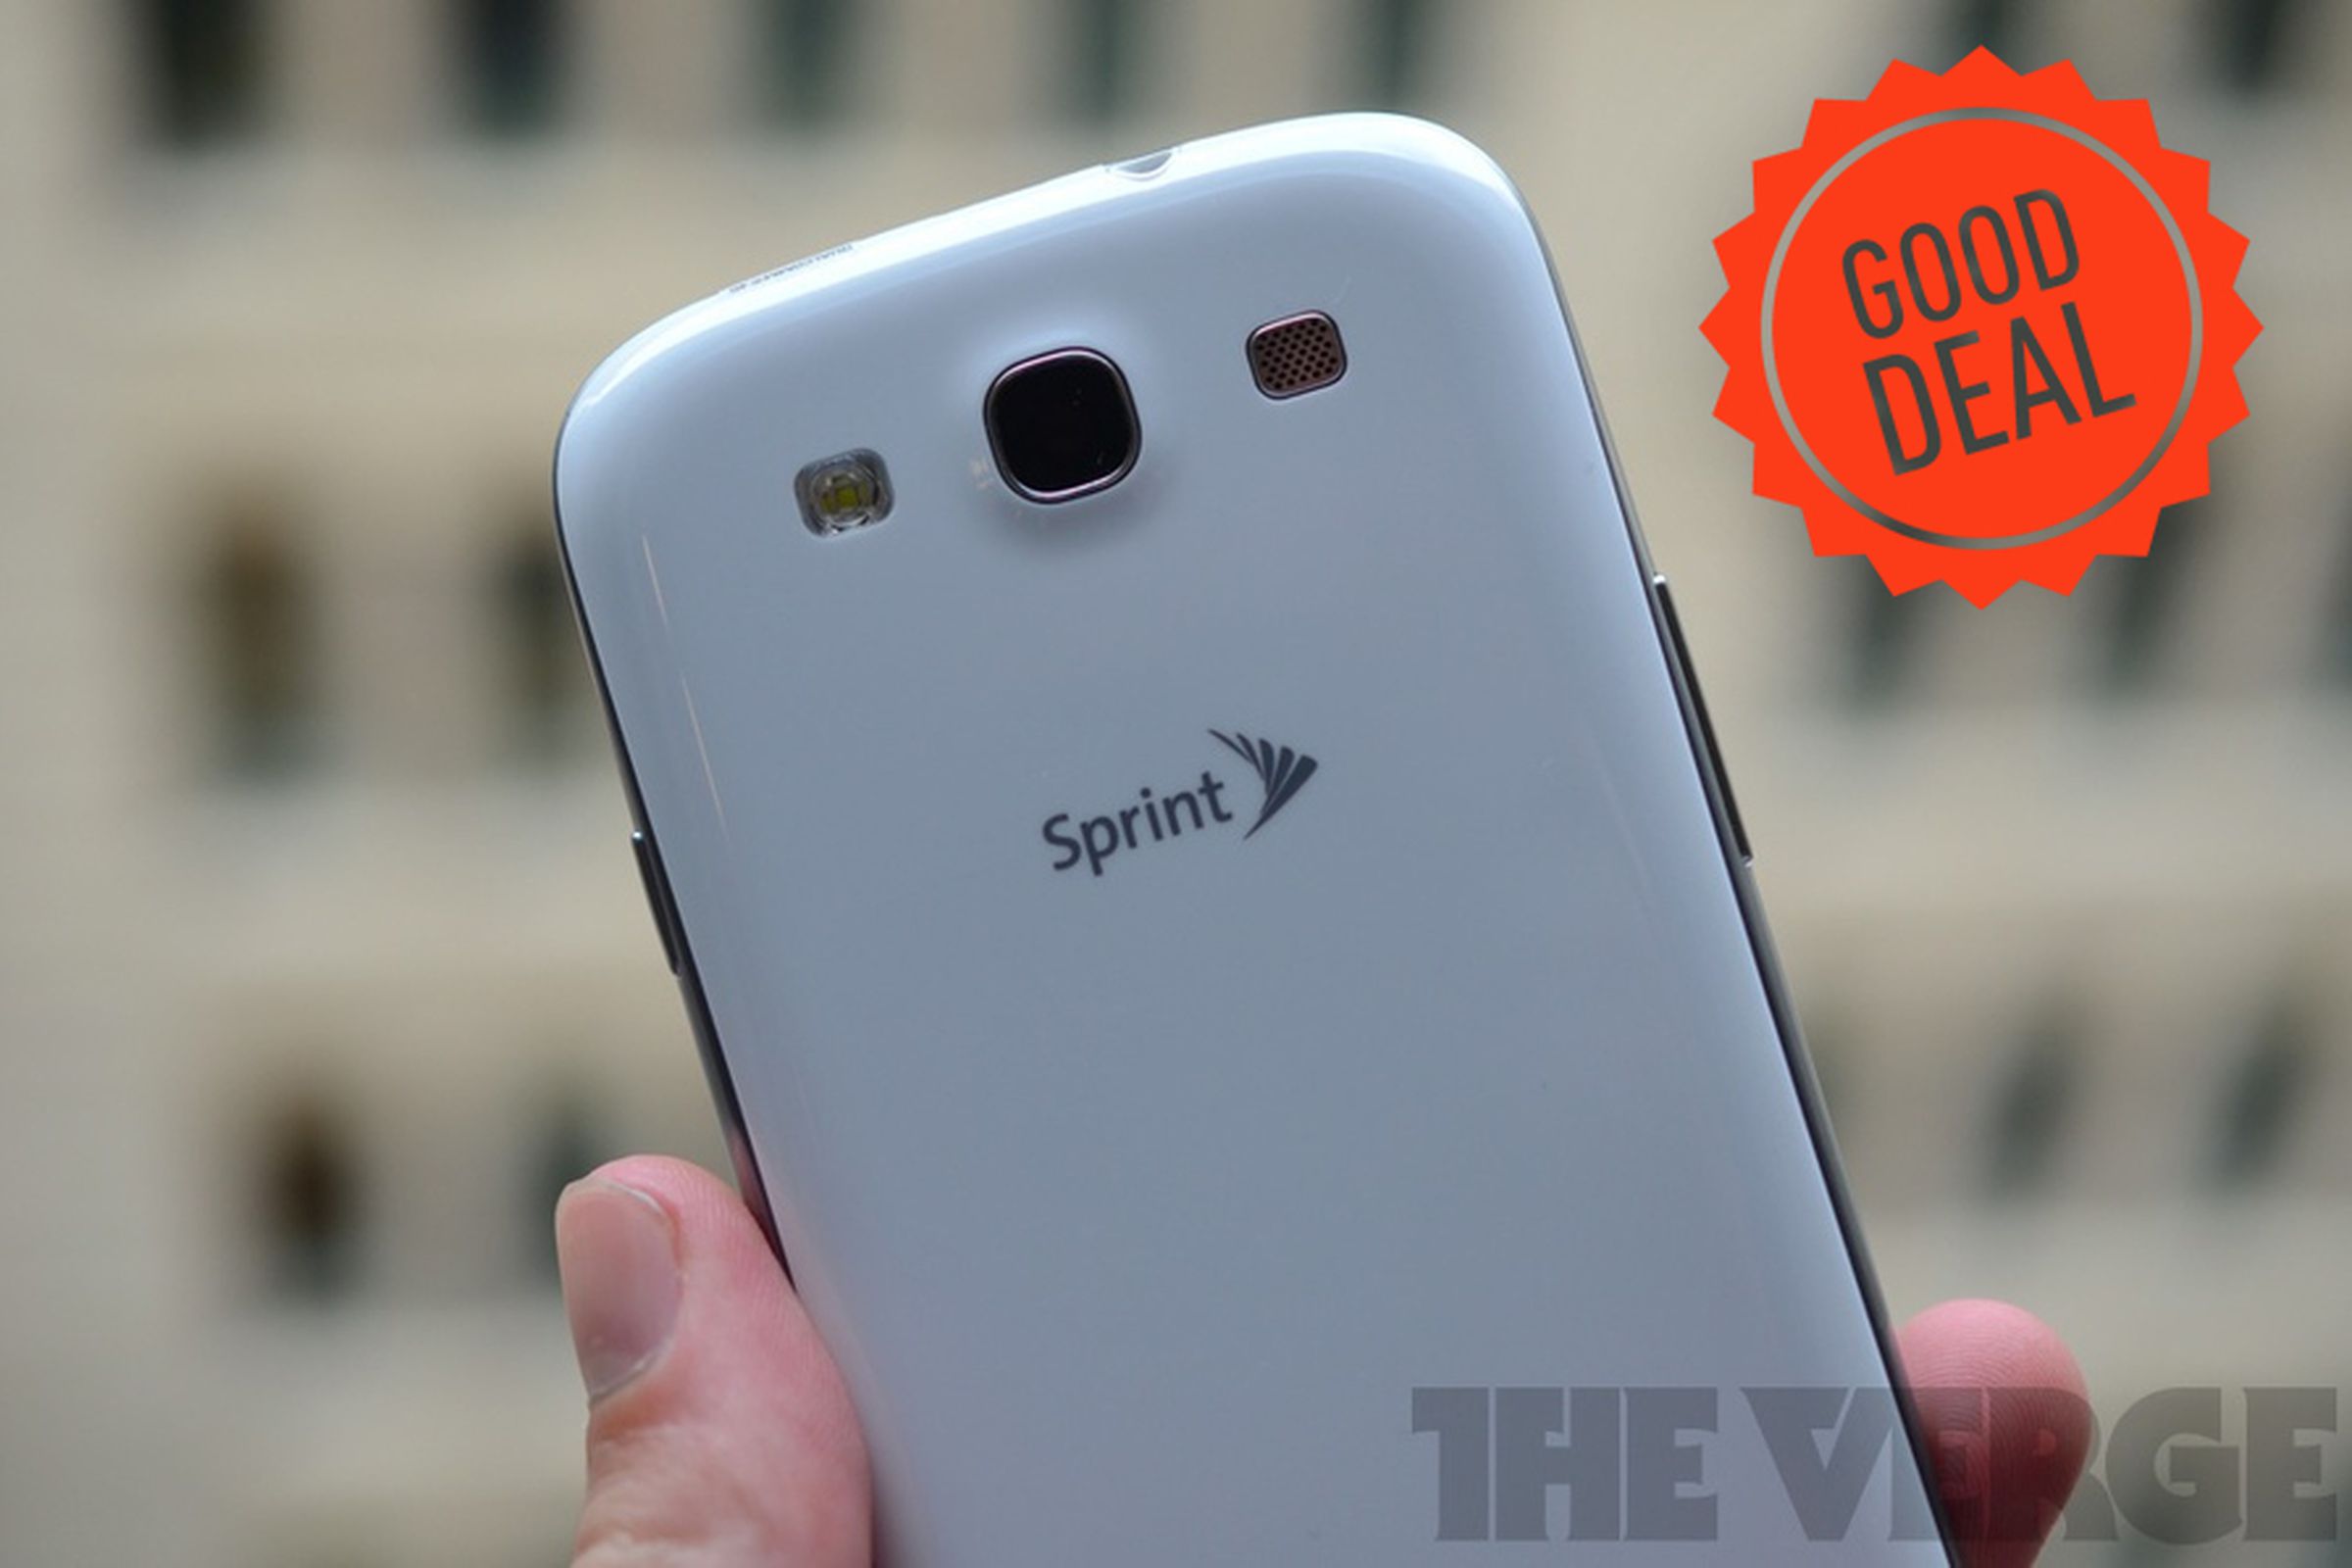 Sprint Galaxy S III Good Deal